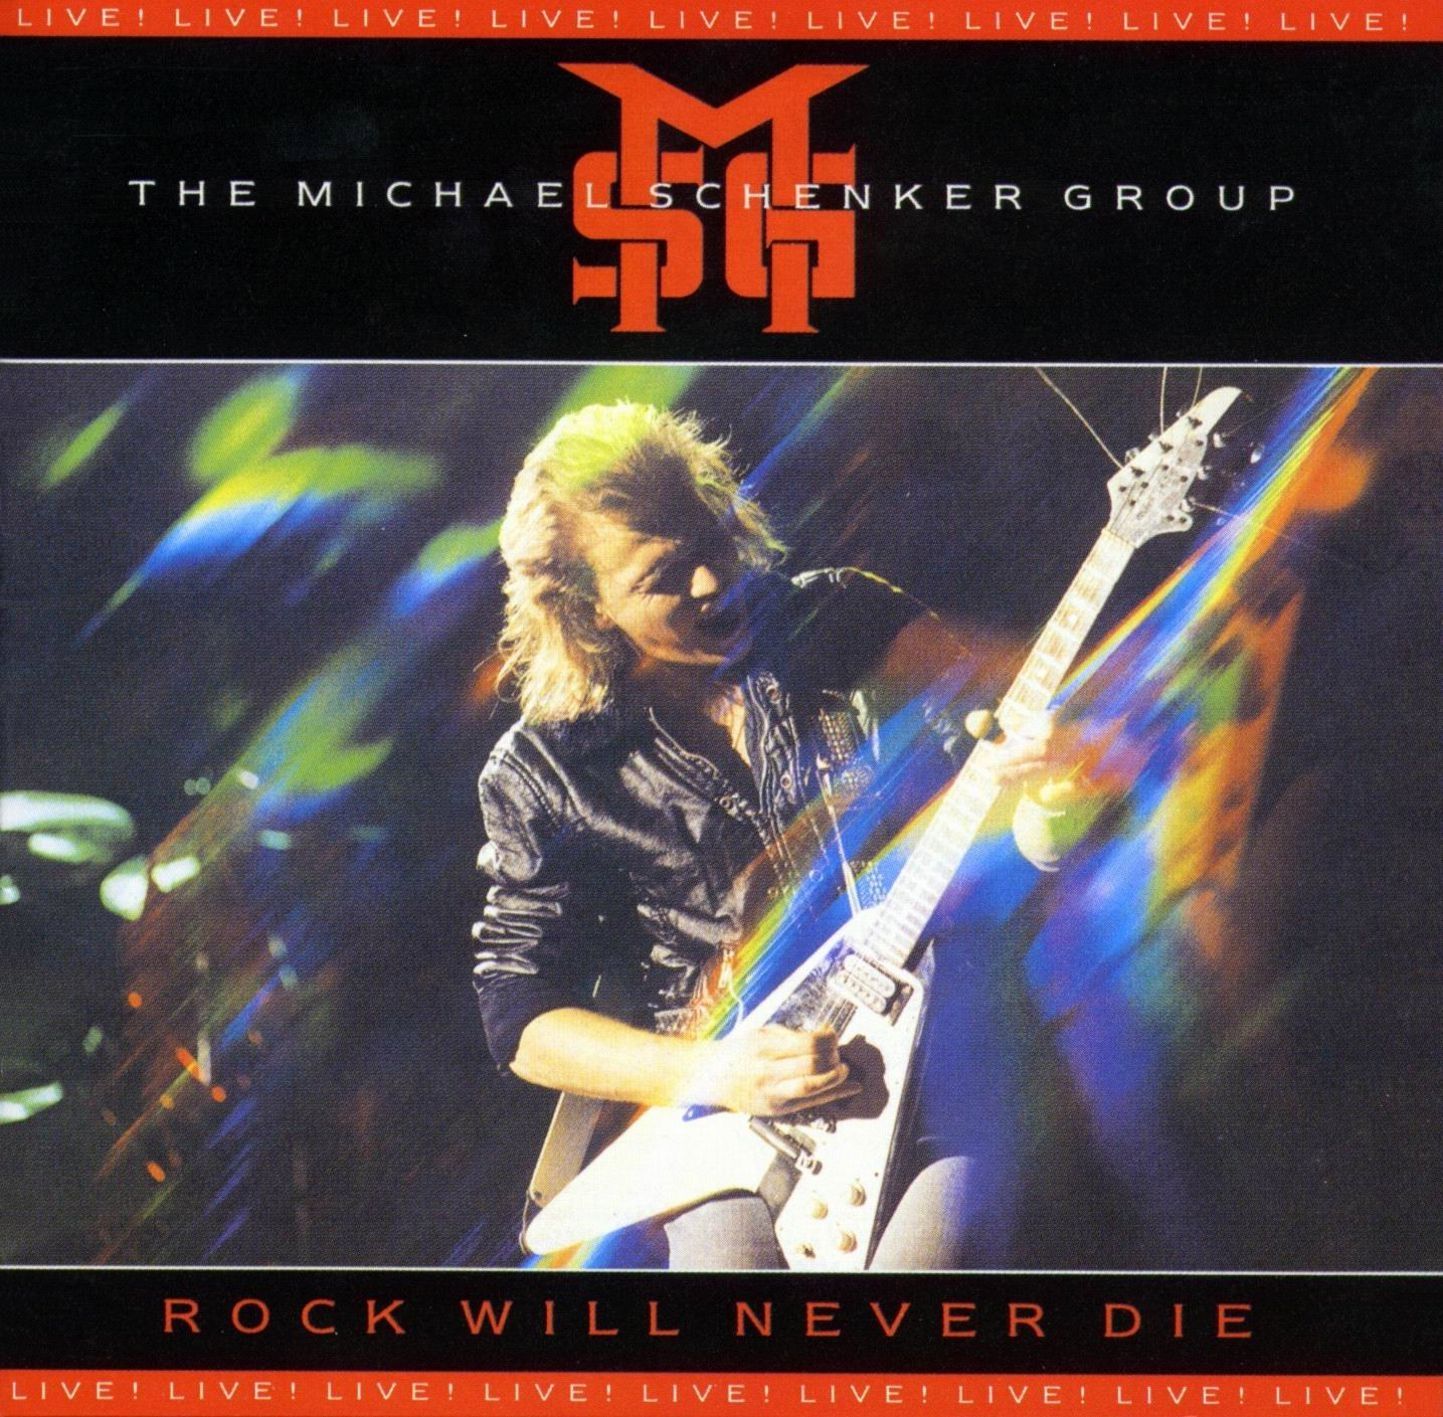 Imagem do álbum Rock Will Never Die do(a) artista Michael Schenker Group